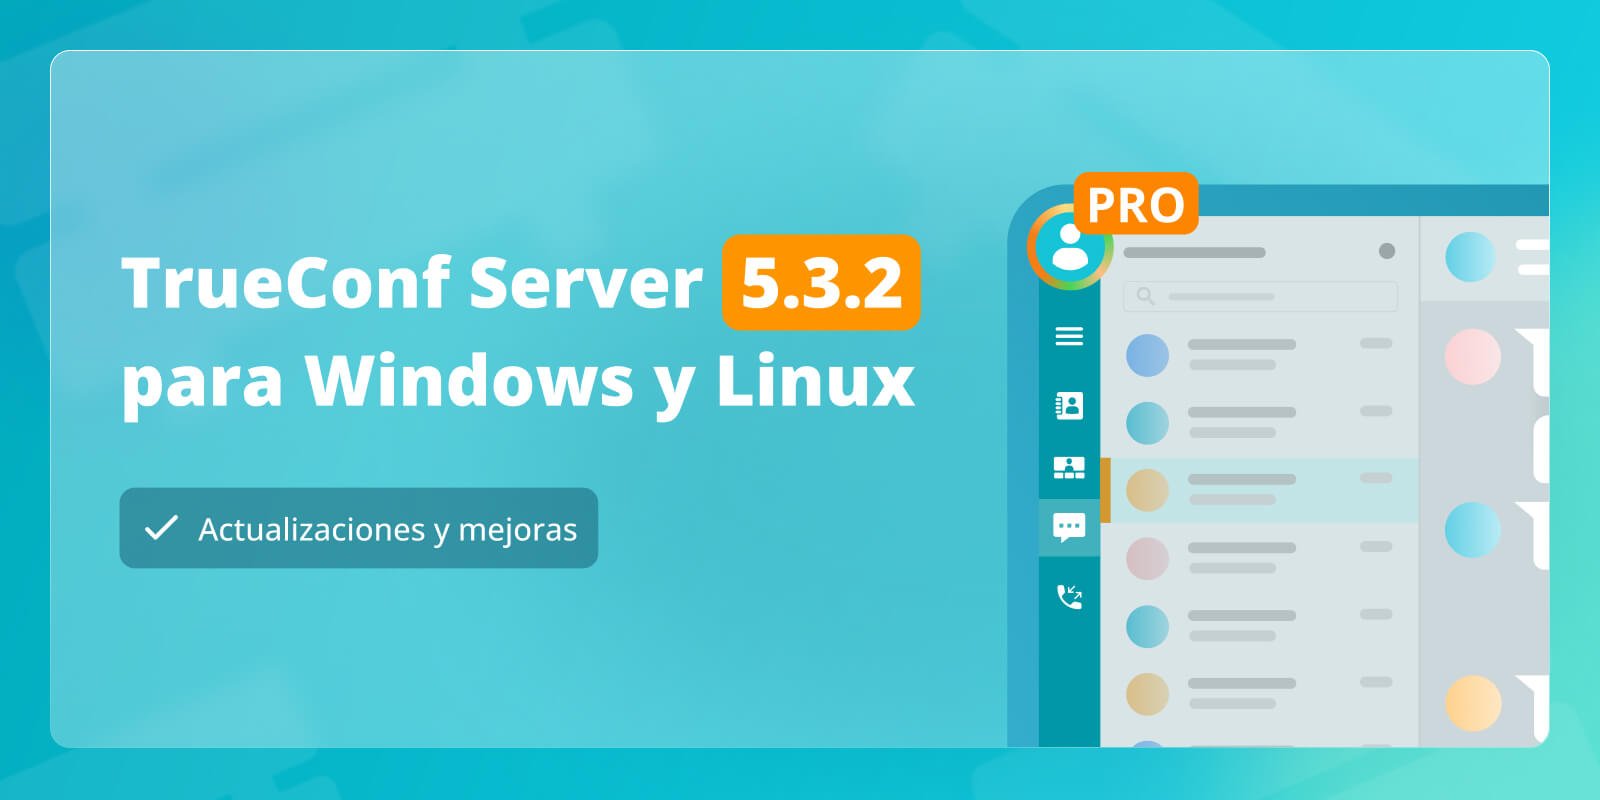 TrueConf Server 5.3.2: Actualizaciones y mejoras 1